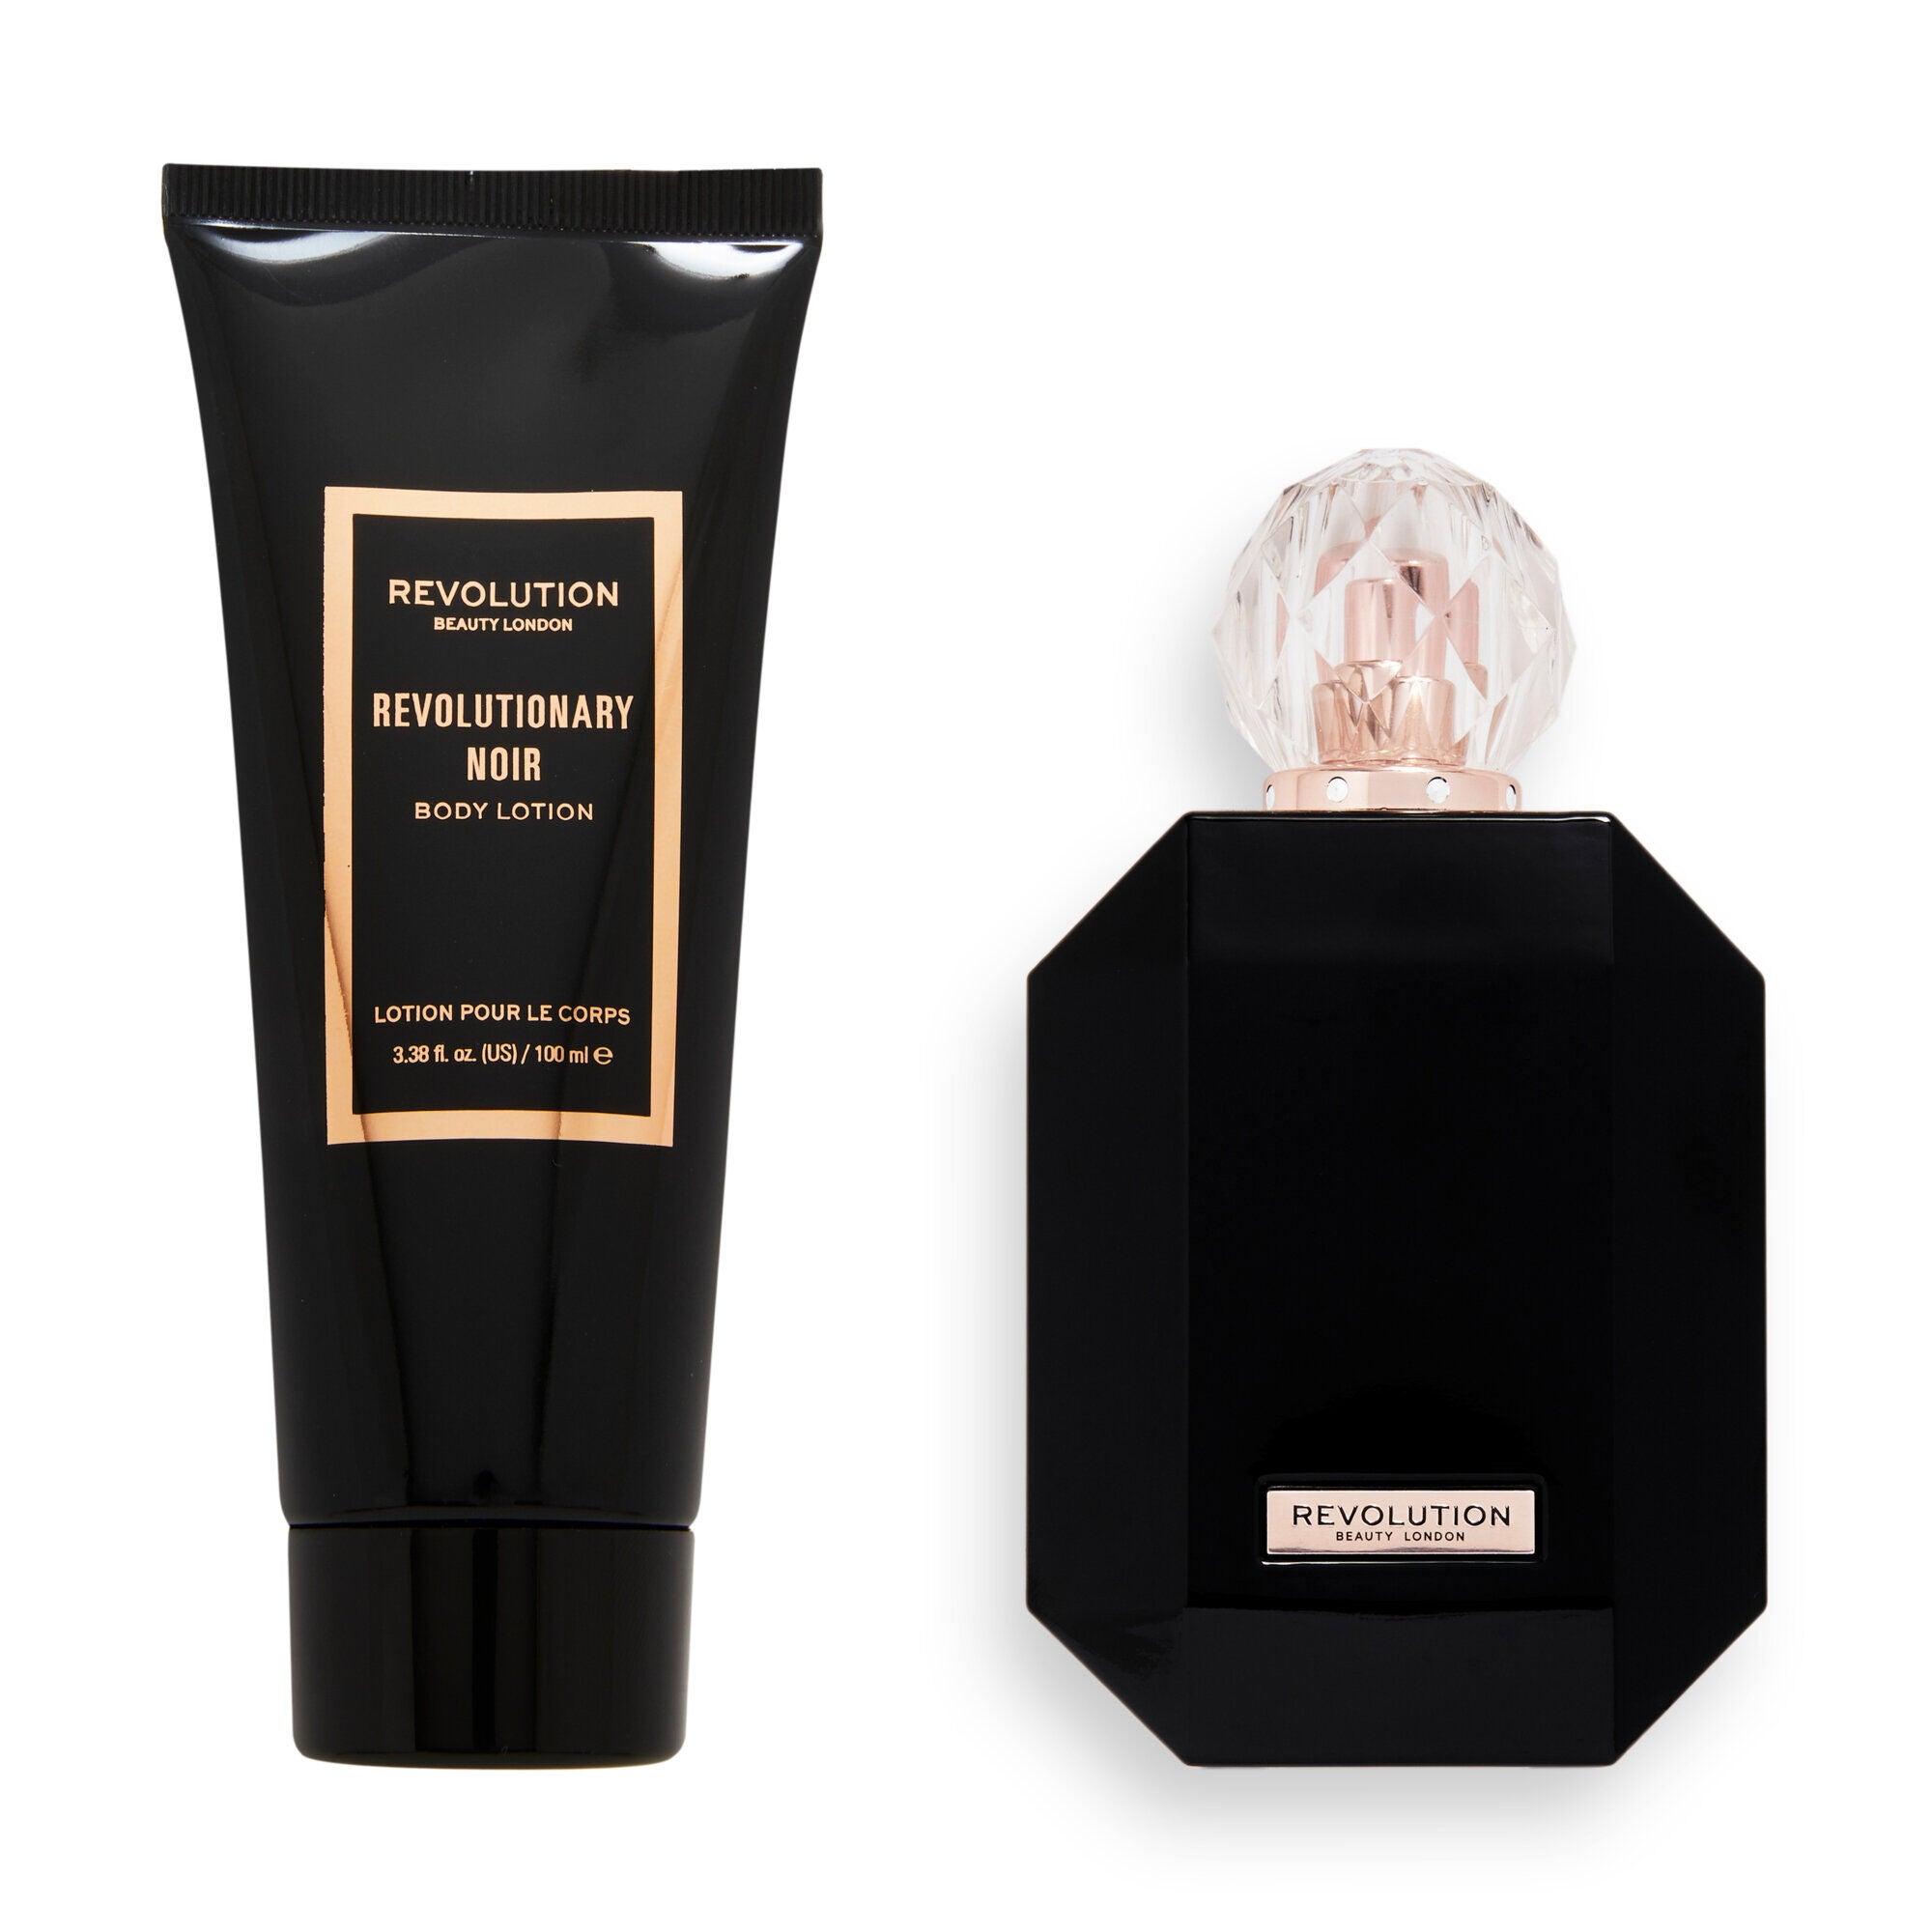 Makeup Revolution Revolutionary Noir Eau De Toilette & Body Lotion Gift Set, products